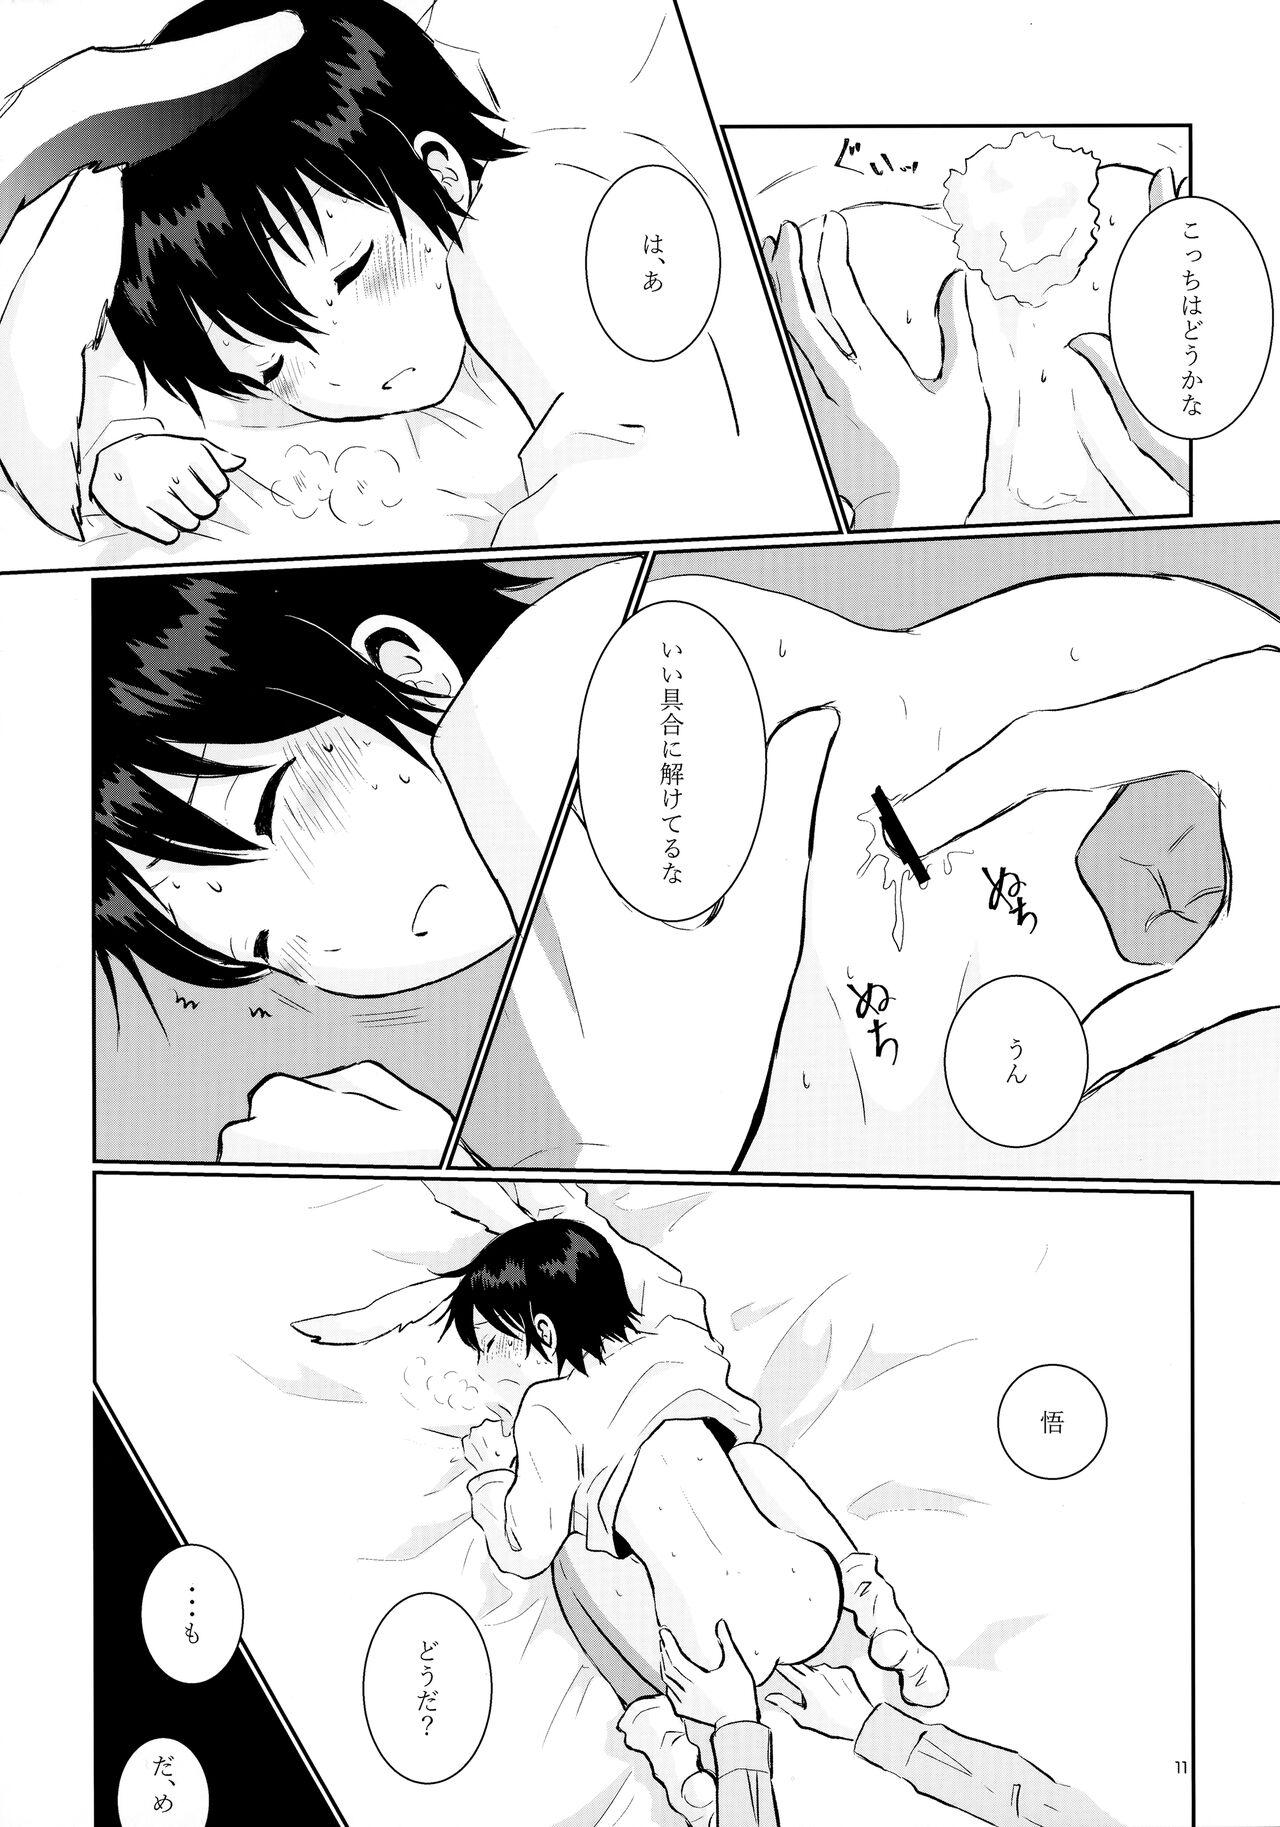 Piercing Usagi no Shippo - Boku dake ga inai machi | erased Kissing - Page 11